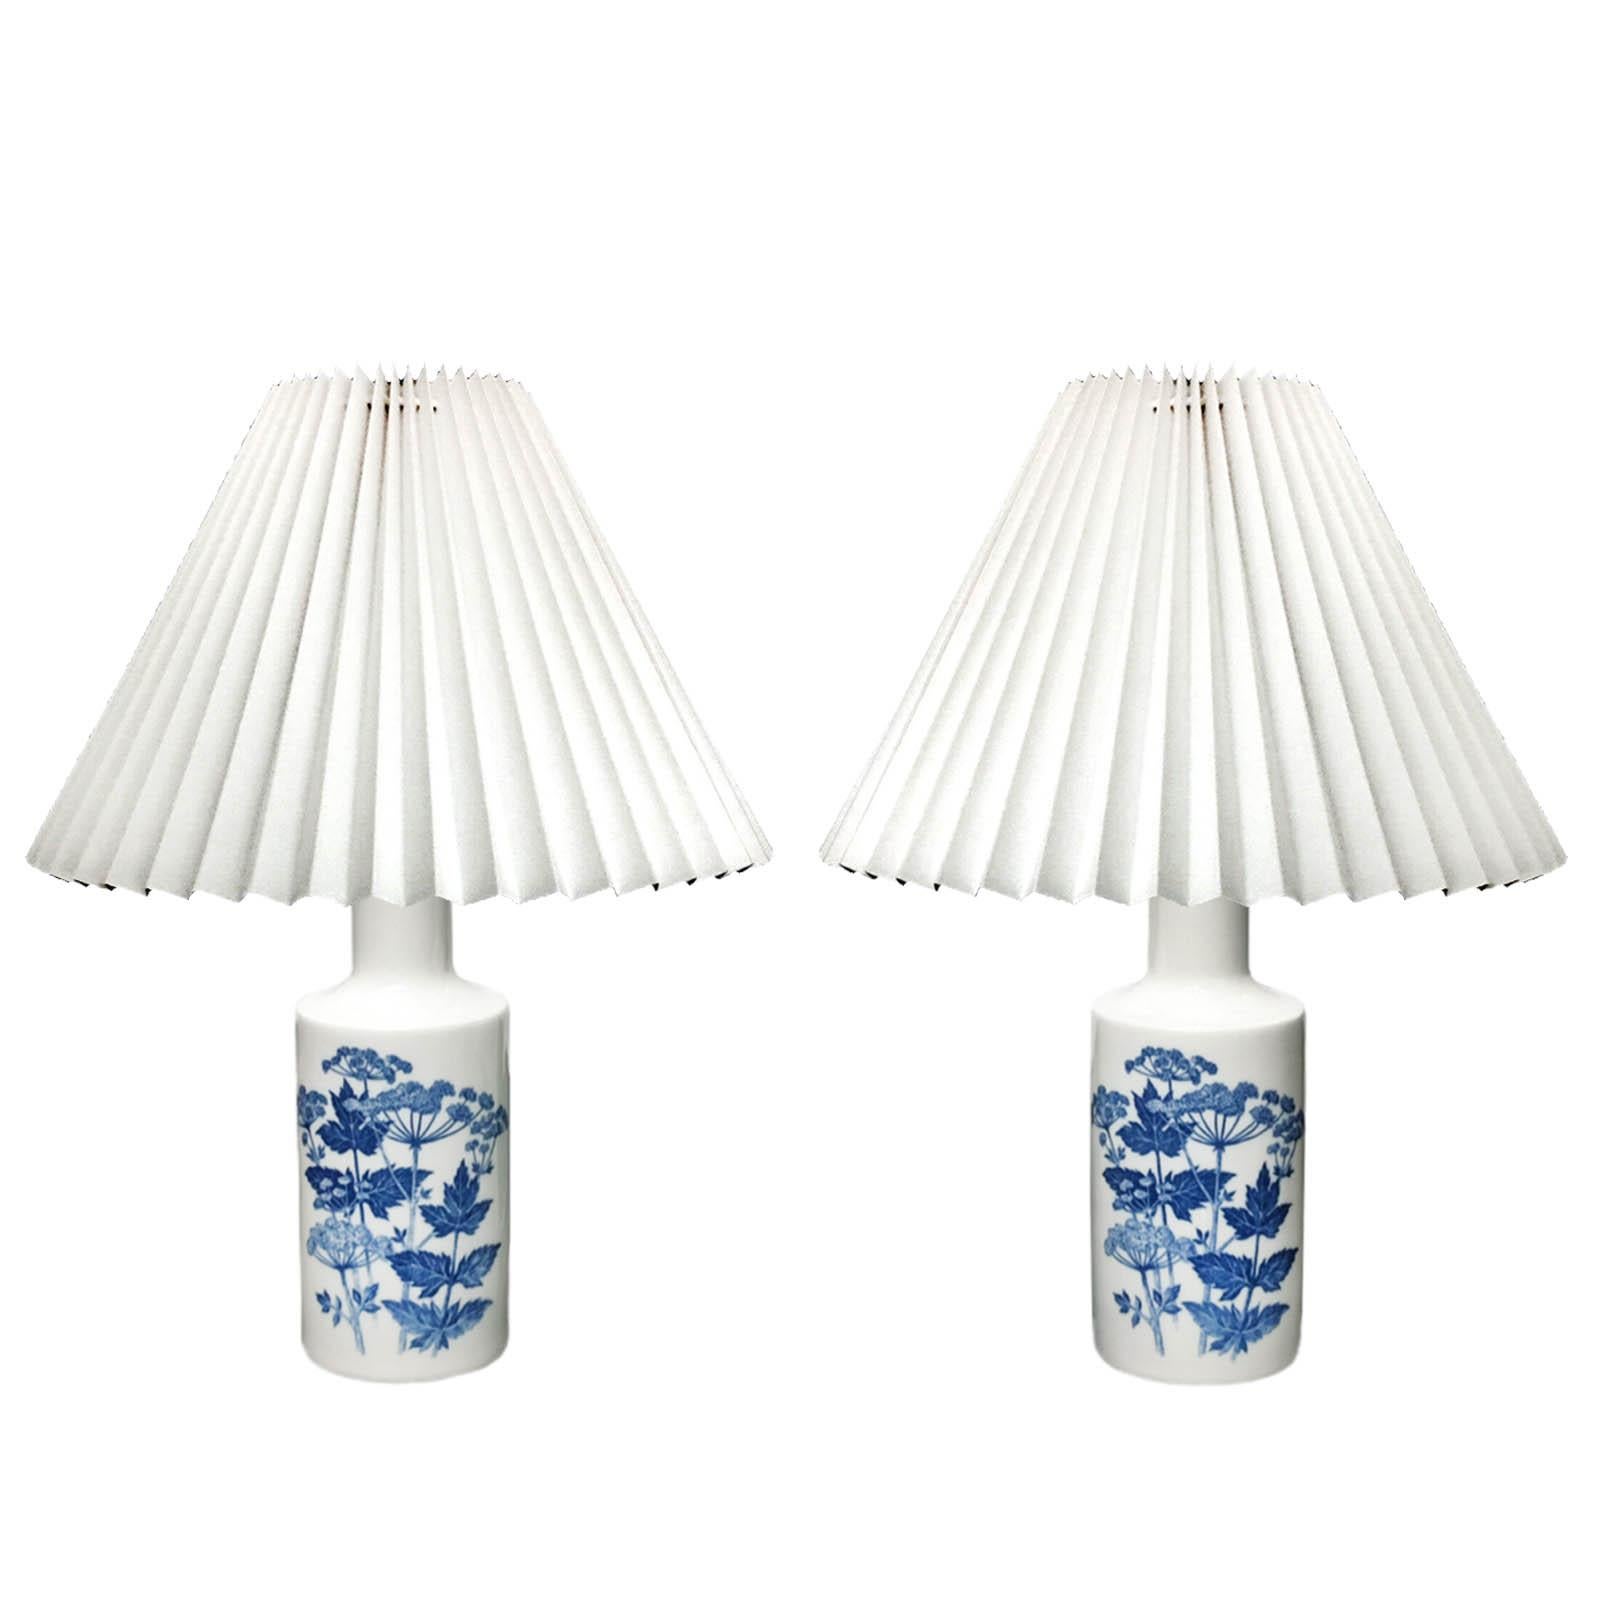 Paar Porzellan-Tischlampen von Fog & Morup für Royal Copenhagen, Dänemark 1960er Jahre.
Dänische Lampen aus weißem Porzellan mit blauem Dekor aus Pastinakenpflanzen, handgemalt von dem dänischen Künstler Kaj Lange in den 1960er Jahren. 